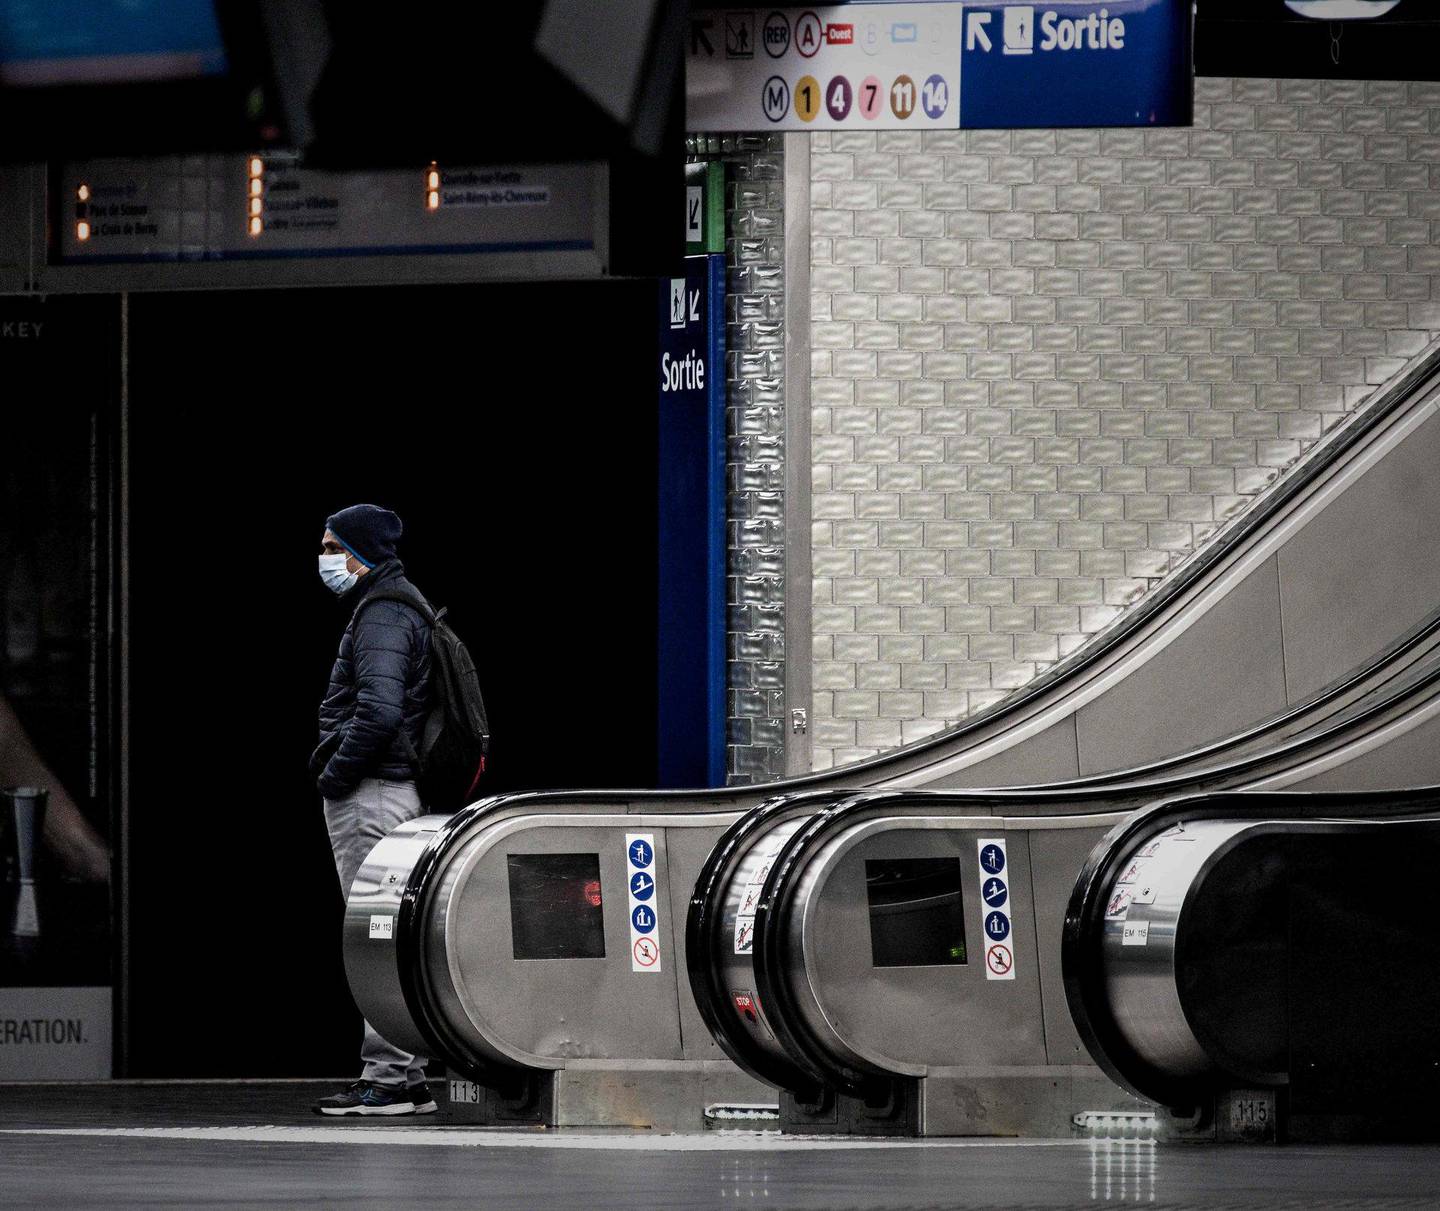 Også Frankrike har innført portforbud for alle ikke helt nødvendige reiser. En enslig mann med munnbind venter på metroen i Paris.
Foto: Philippe Lopez/Ntb scanpix